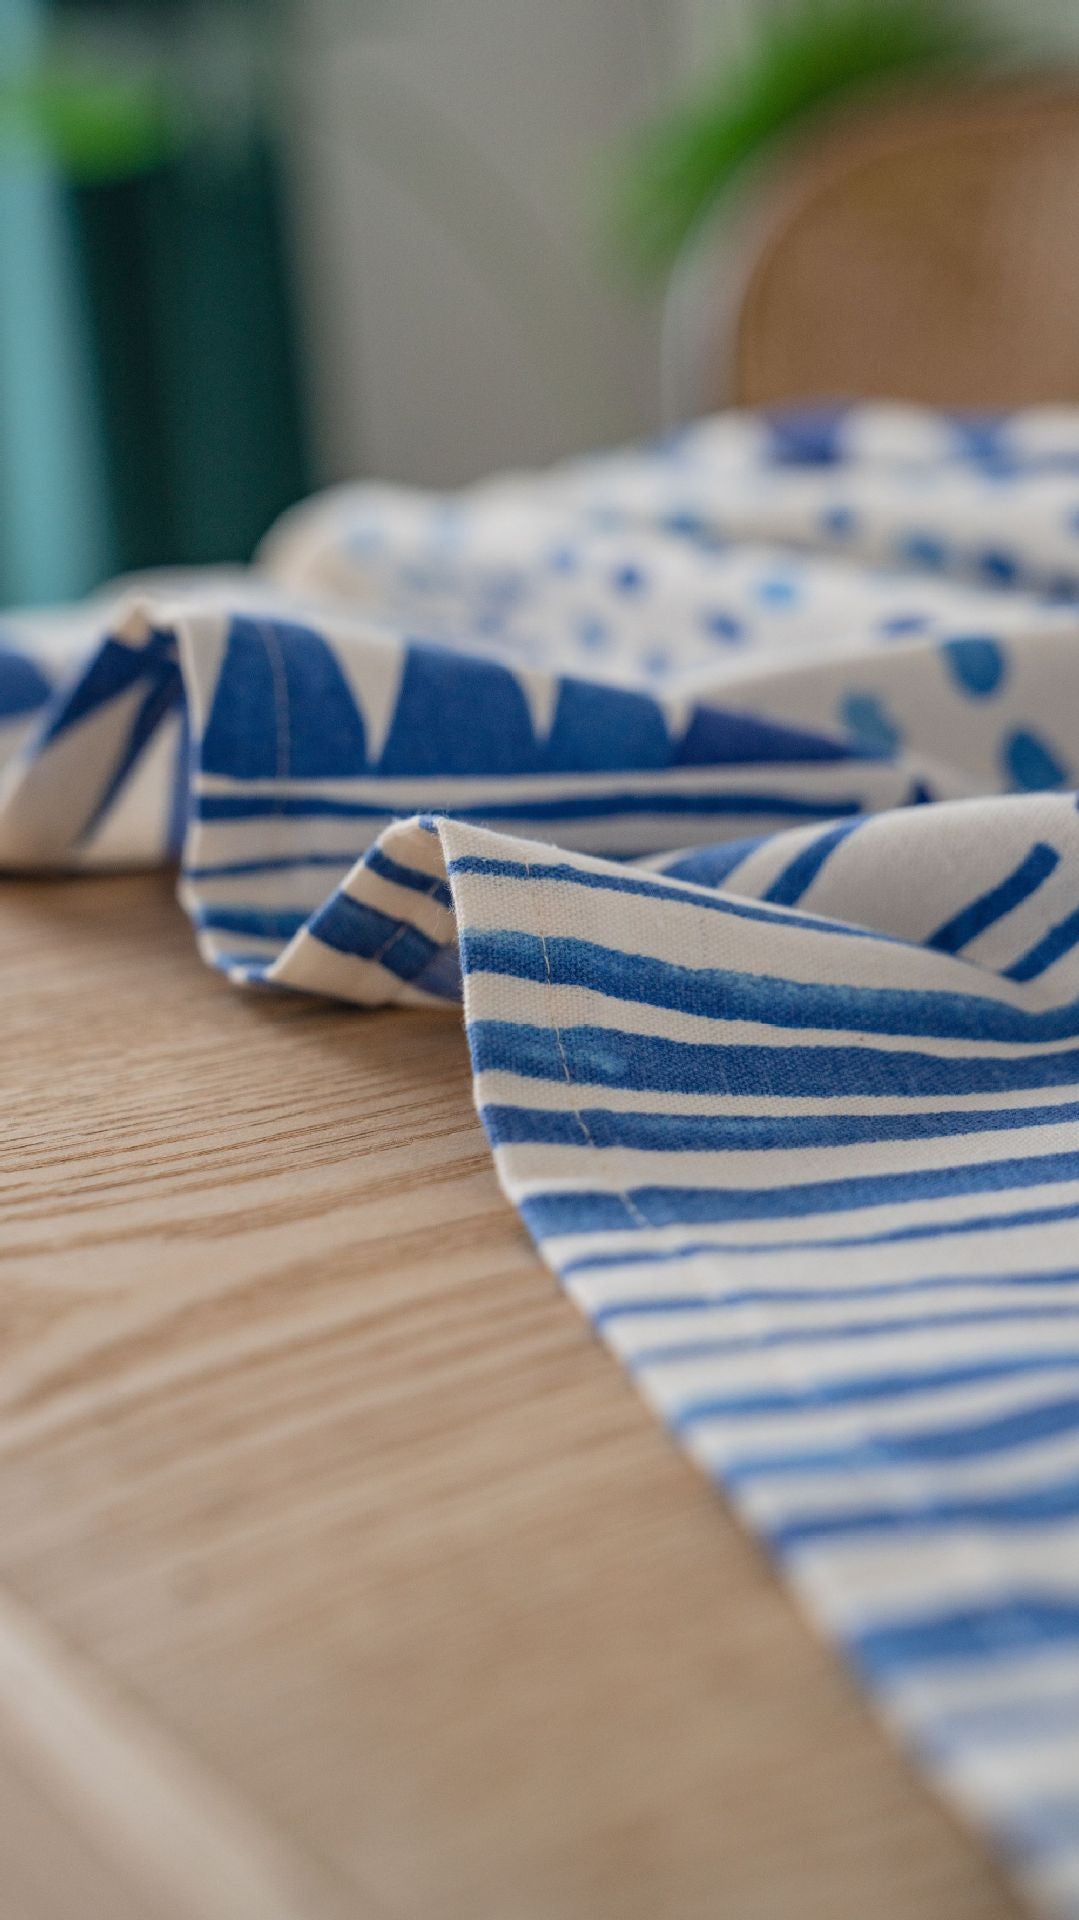 Table Cloth Blue Mosaic Geometric Printing